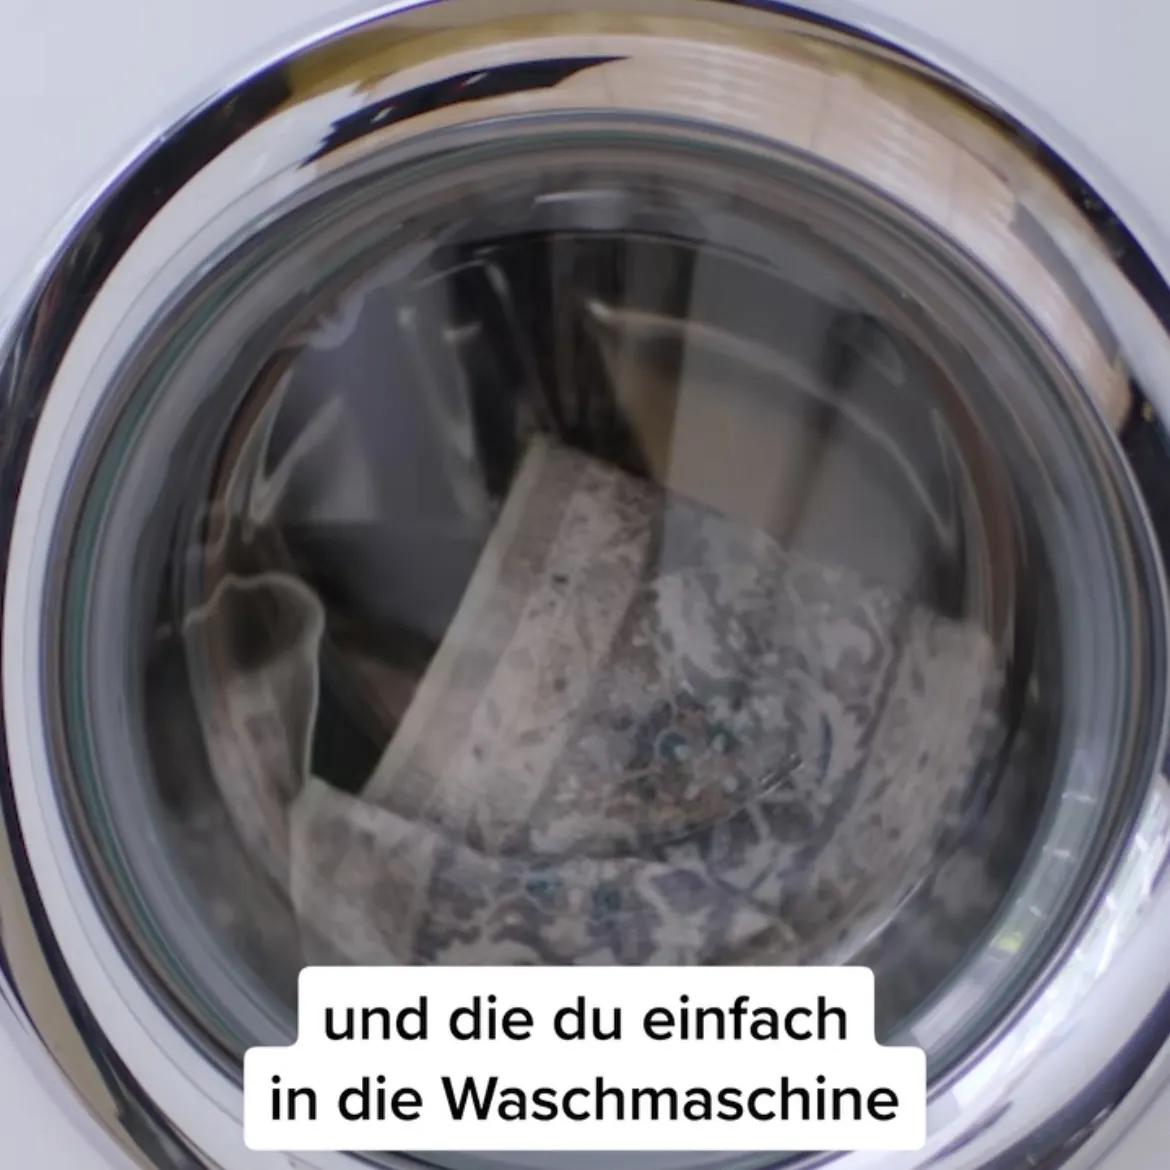 1. von 2 Bildern, Waschtrommel mit Teppich, Text: die du einfach in die Waschmaschine